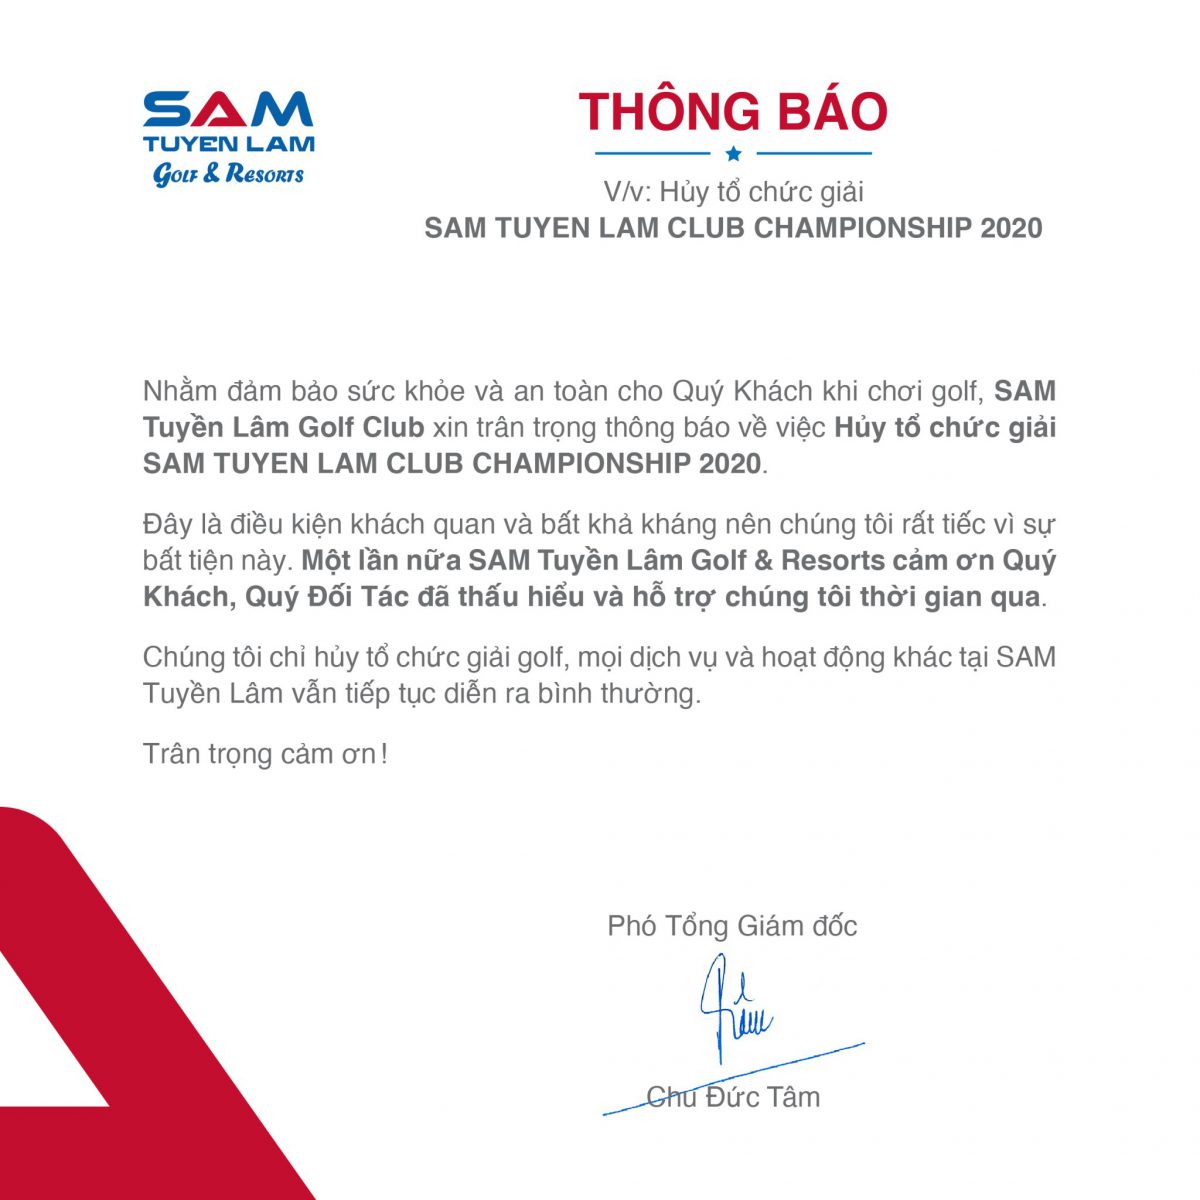 (Tiếng Việt) THÔNG BÁO: Hủy tổ chức giải SAM TUYỀN LÂM CLUB CHAMPIONSHIP 2020